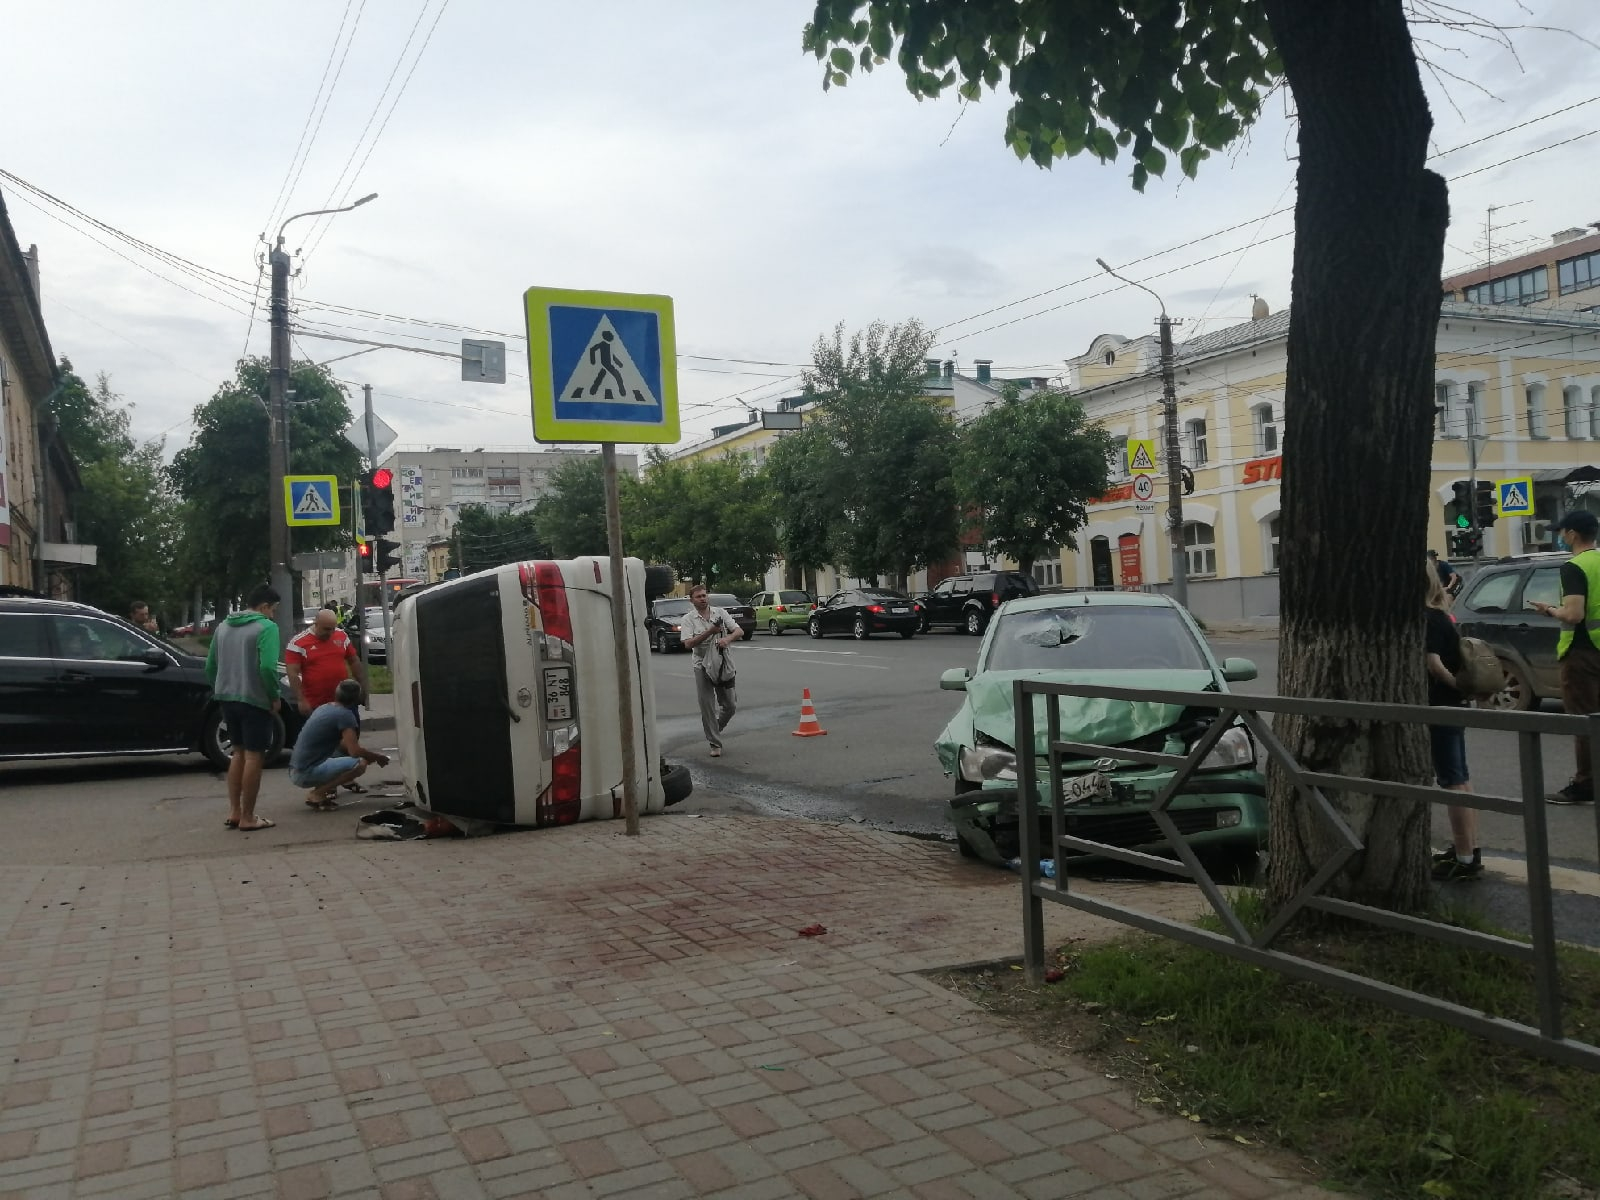 В Кирове на улице Ленина произошла серьезная авария: работает реанимация